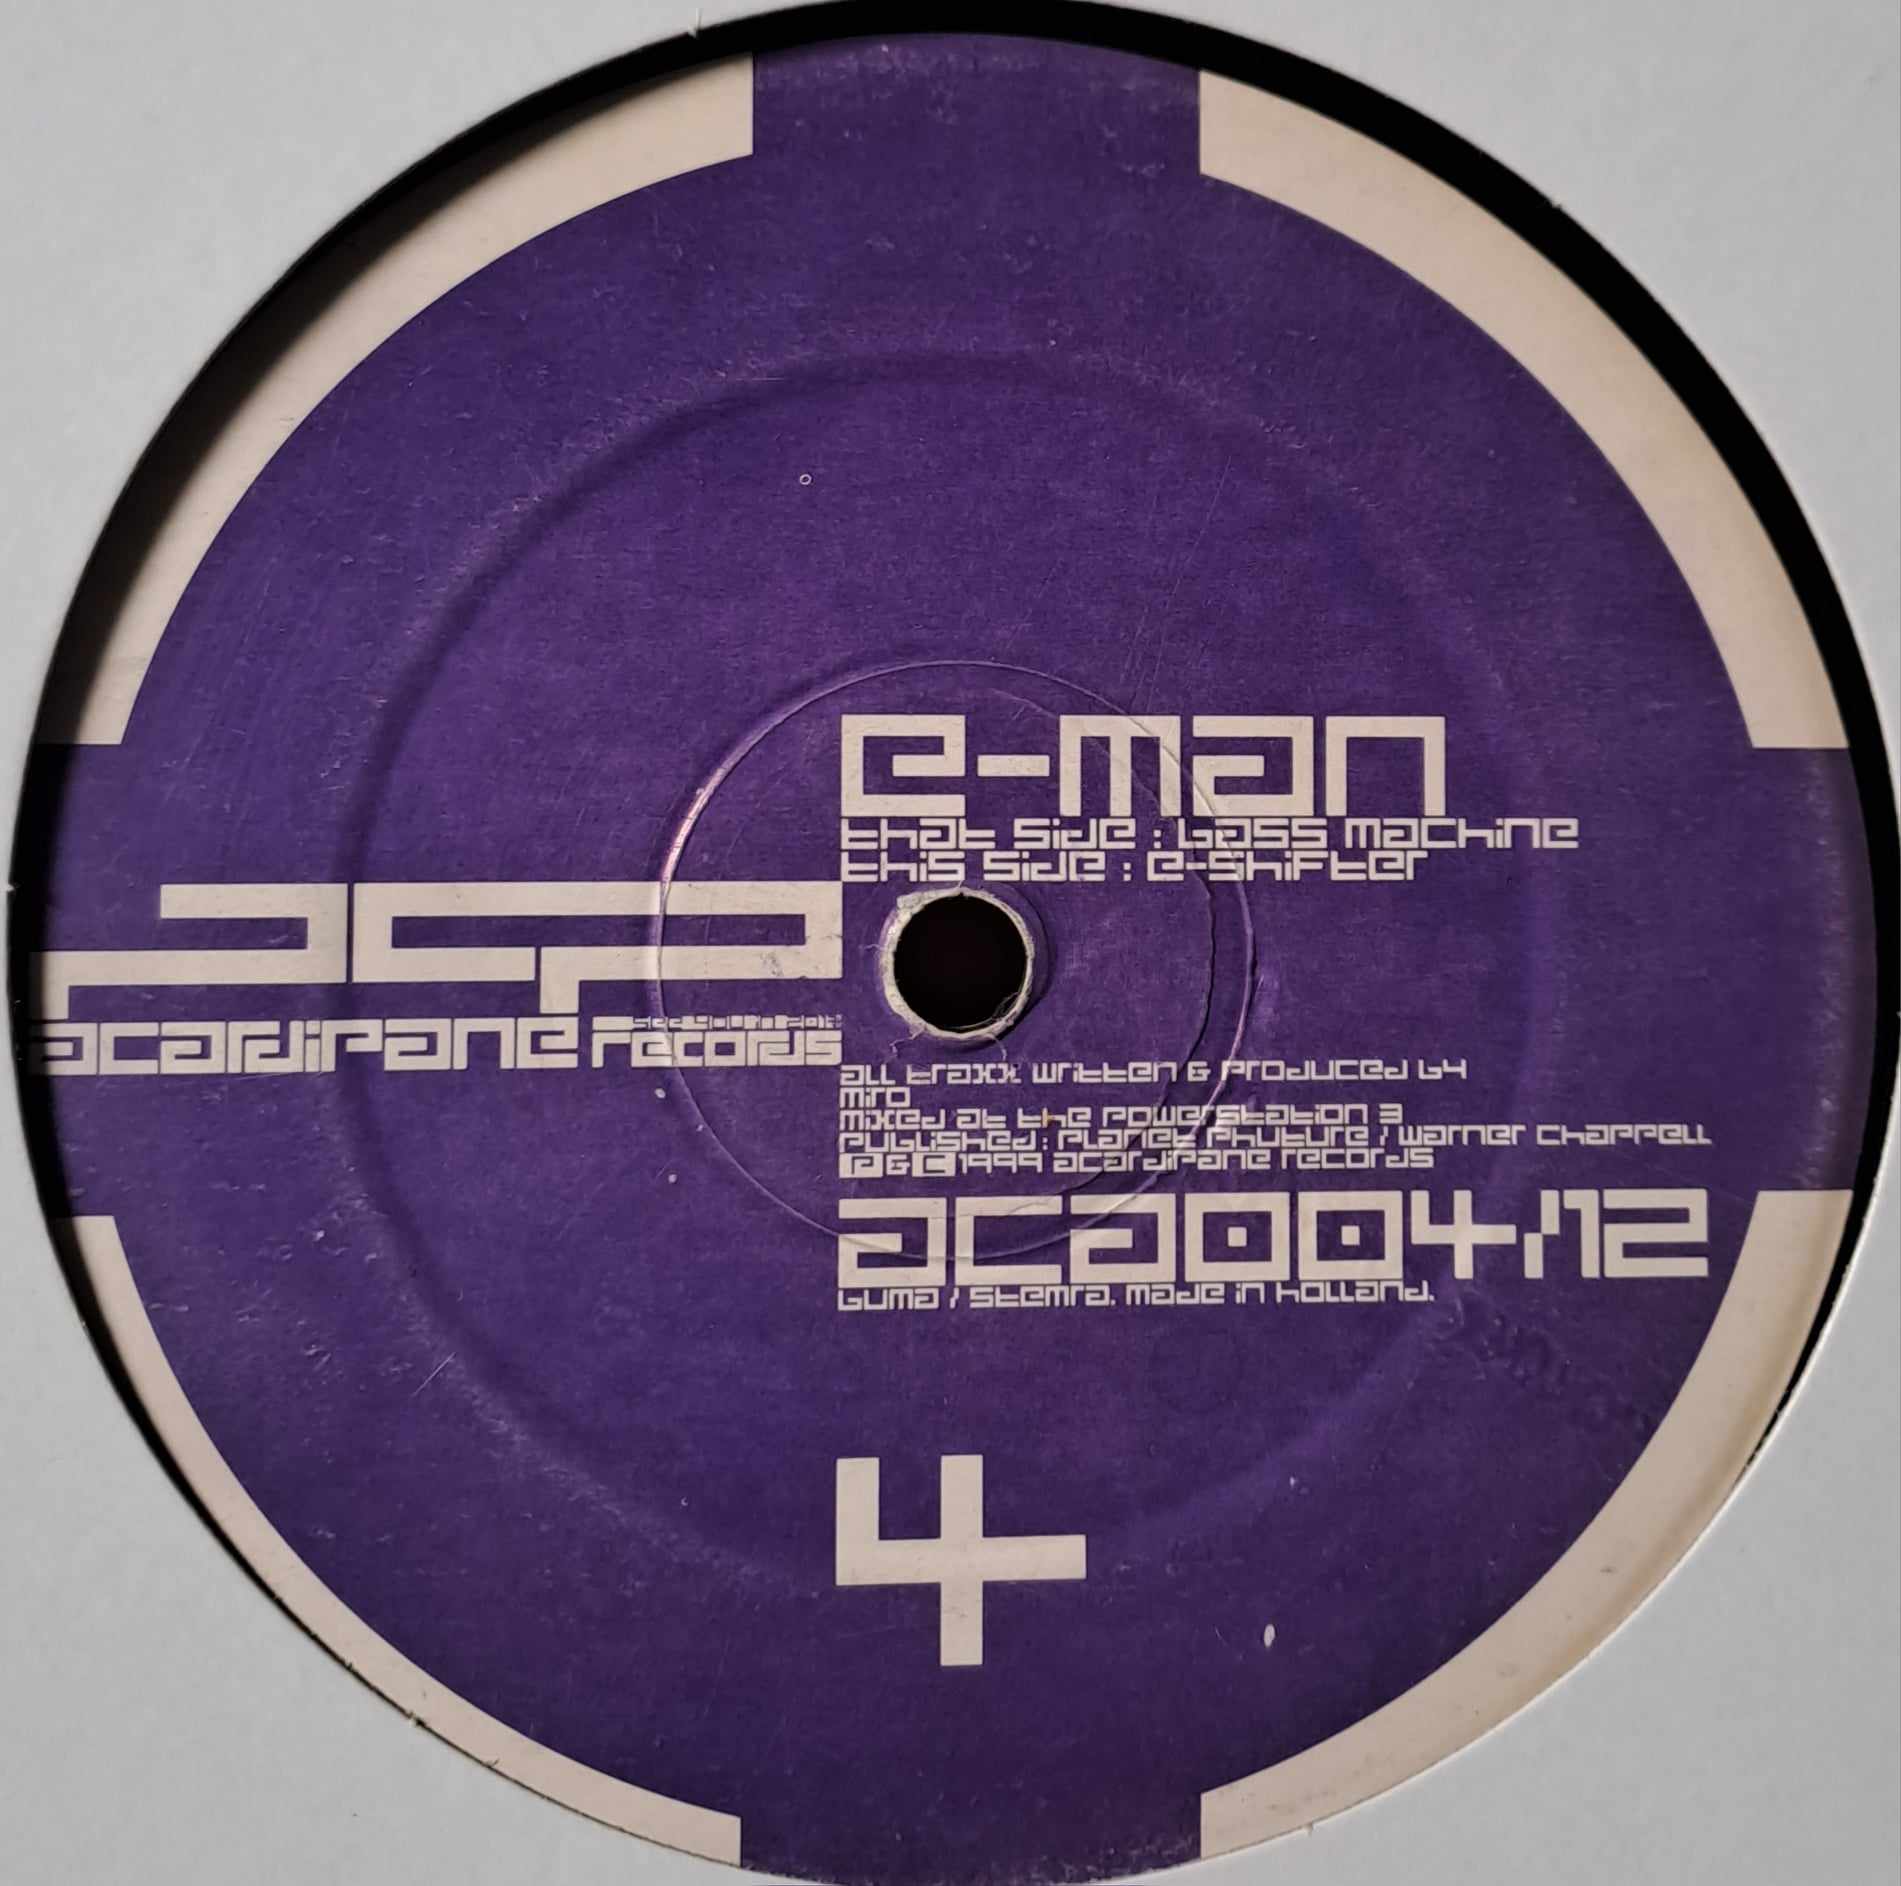 Acardipane Records 004 12 - vinyle hardcore